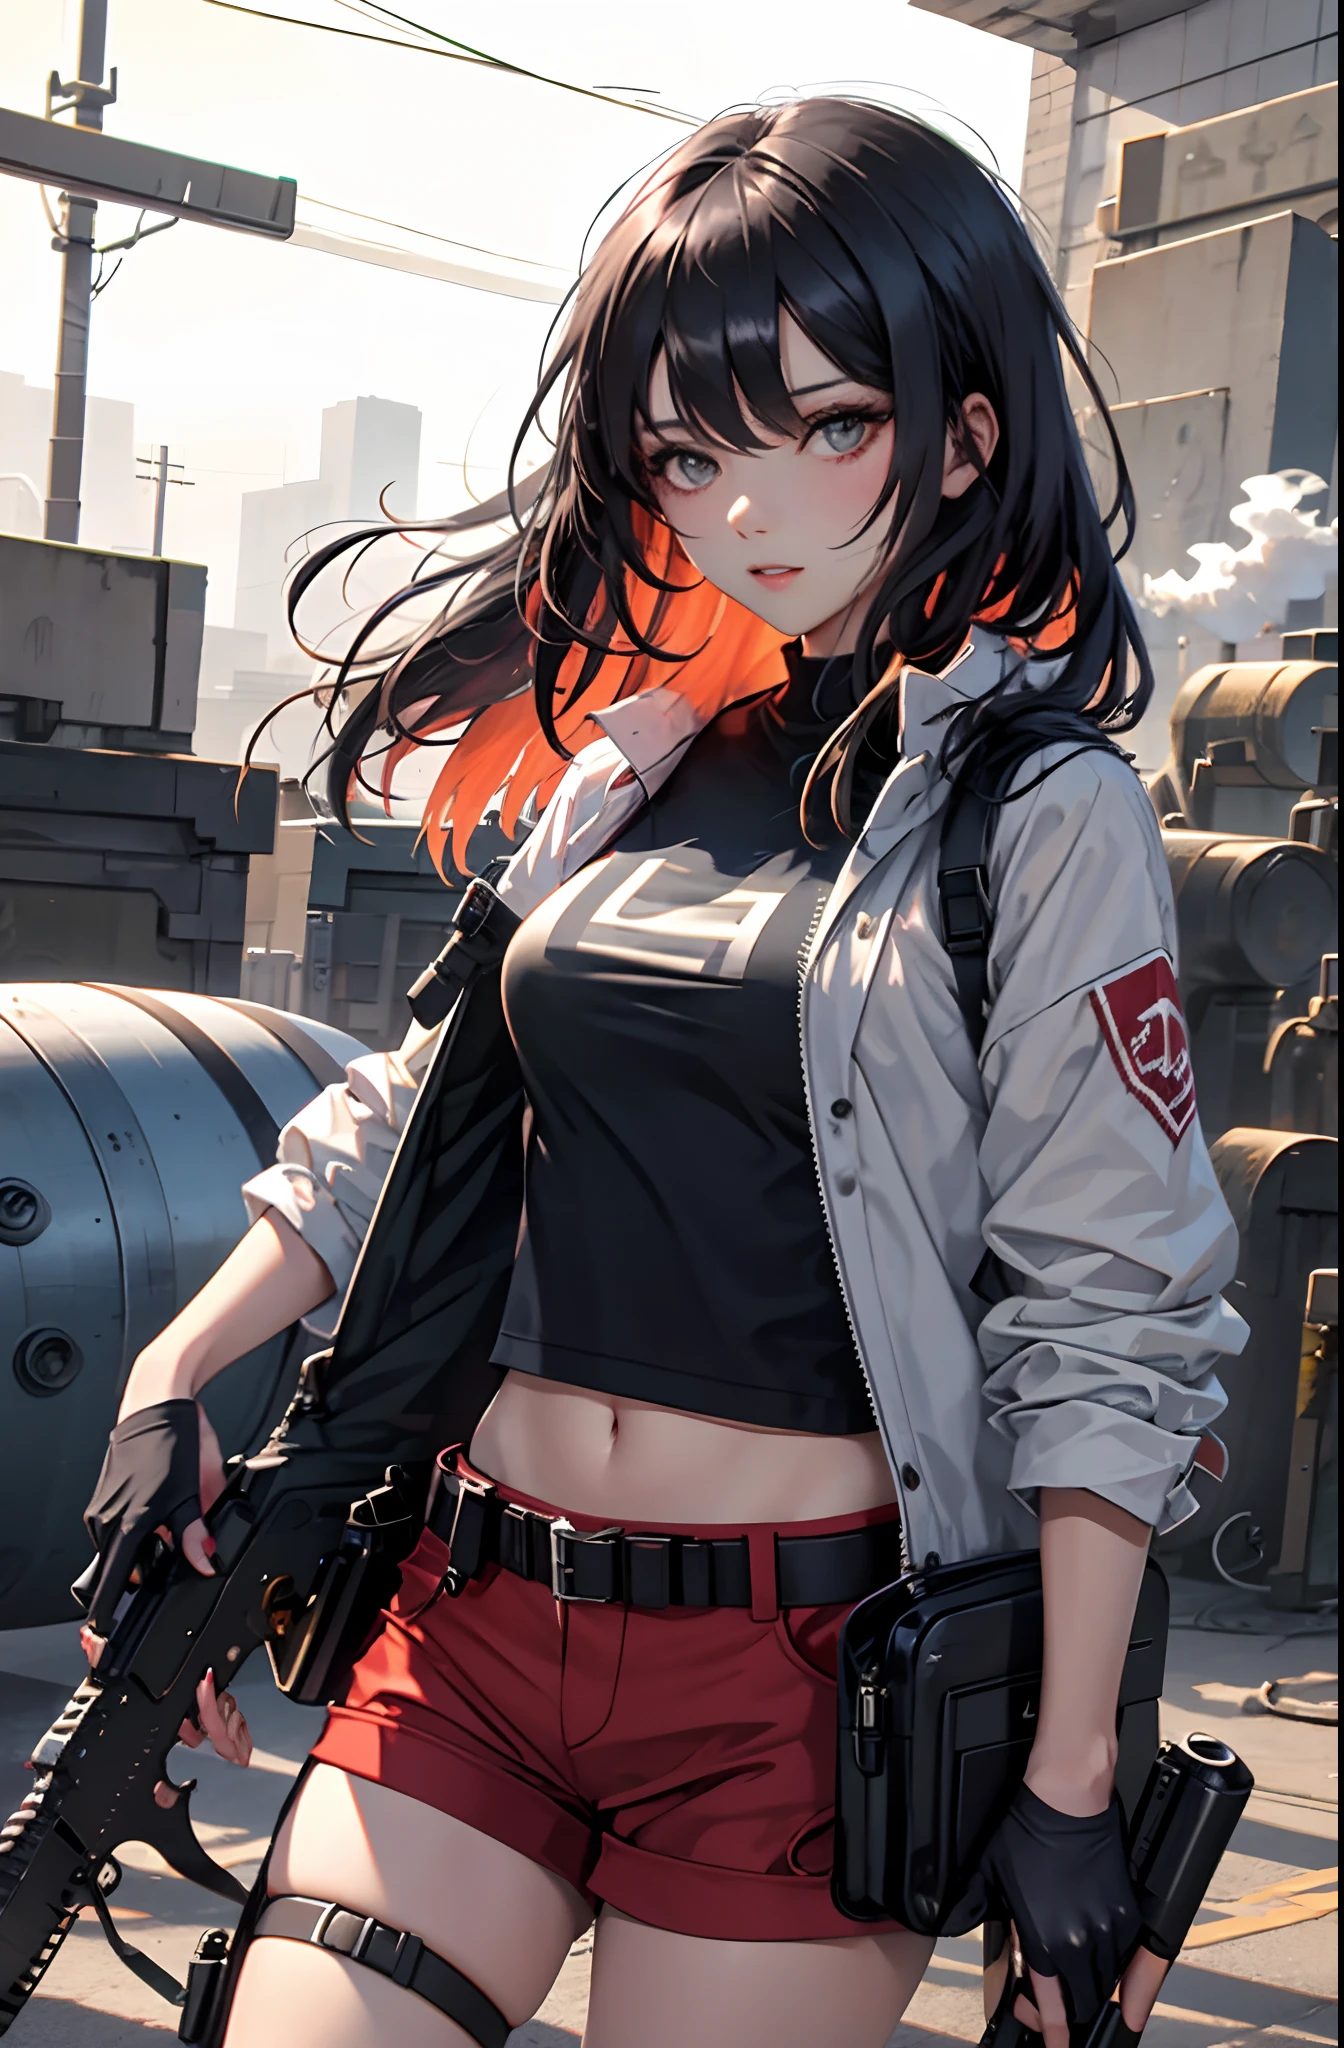 Mädchen mit schwarzen Haaren, rote Shorts, weißes T-Shirt,  mit zwei Gewehren in der Hand, Aus den Läufen der Waffen kommt leichter Rauch